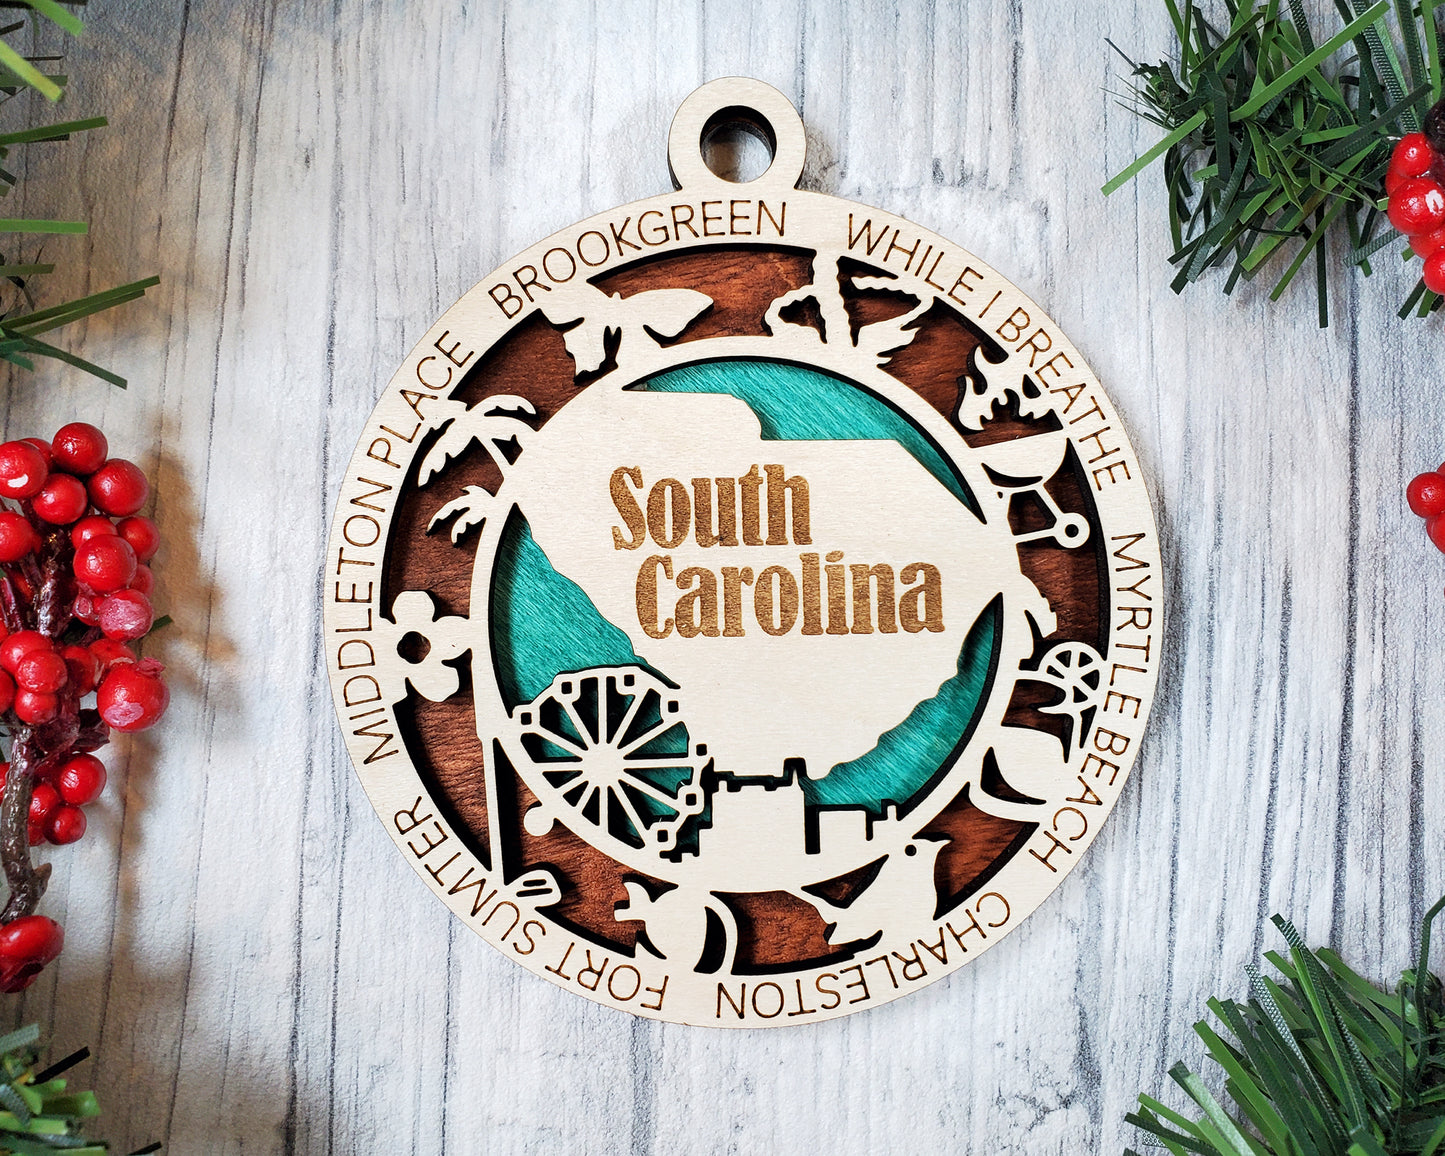 South Carolina ornament